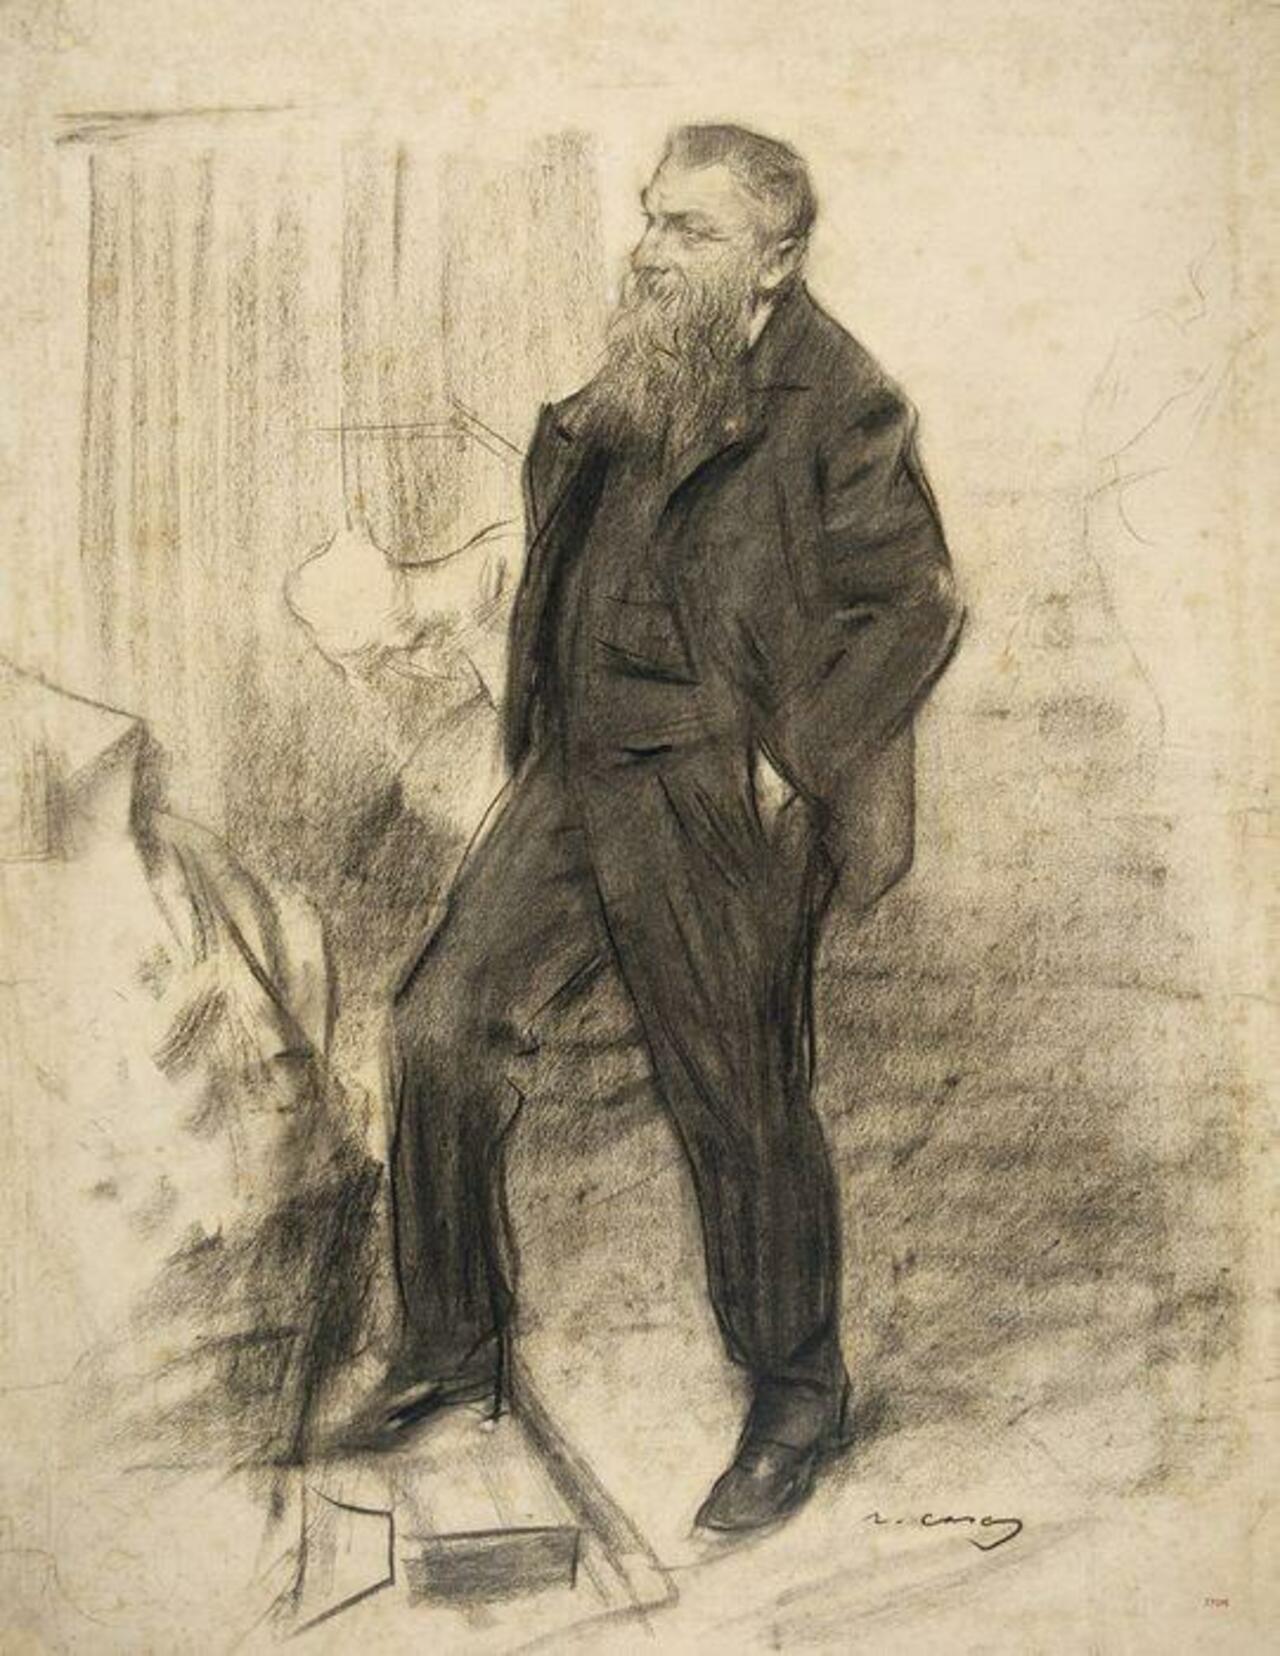 Portrait of a Auguste Rodin - Ramon Casas y Carbó (1900) #art http://t.co/uXbIBsVReX